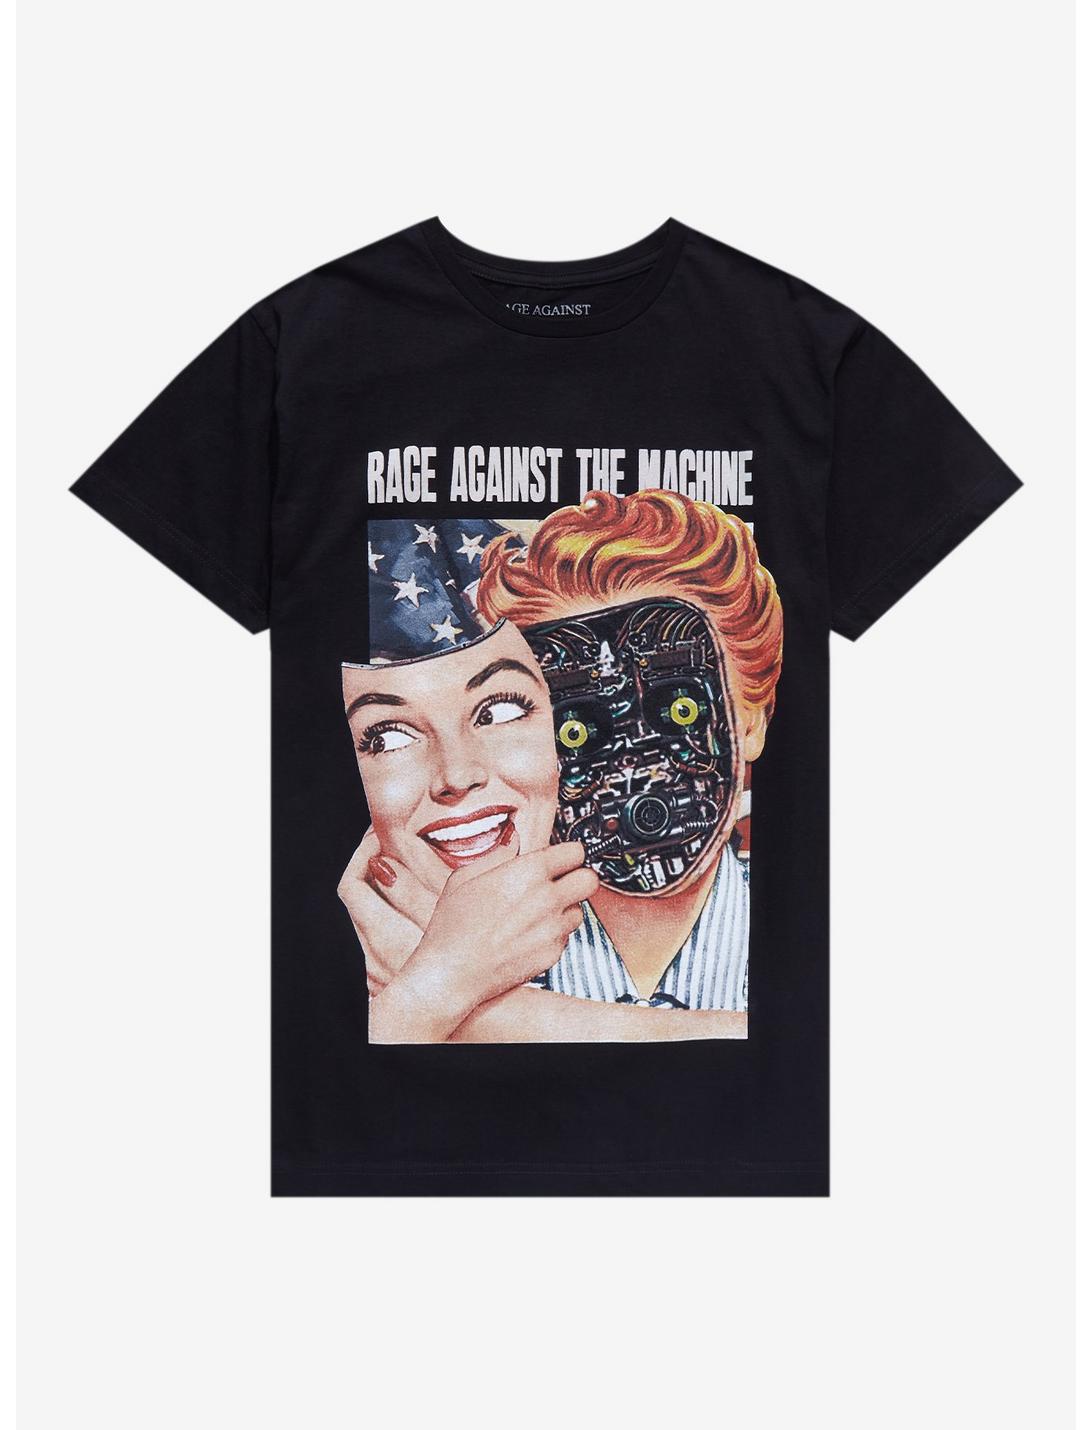 Rage Against The Machine Public Service Announcement Tour 2022 T-Shirt, BLACK, hi-res